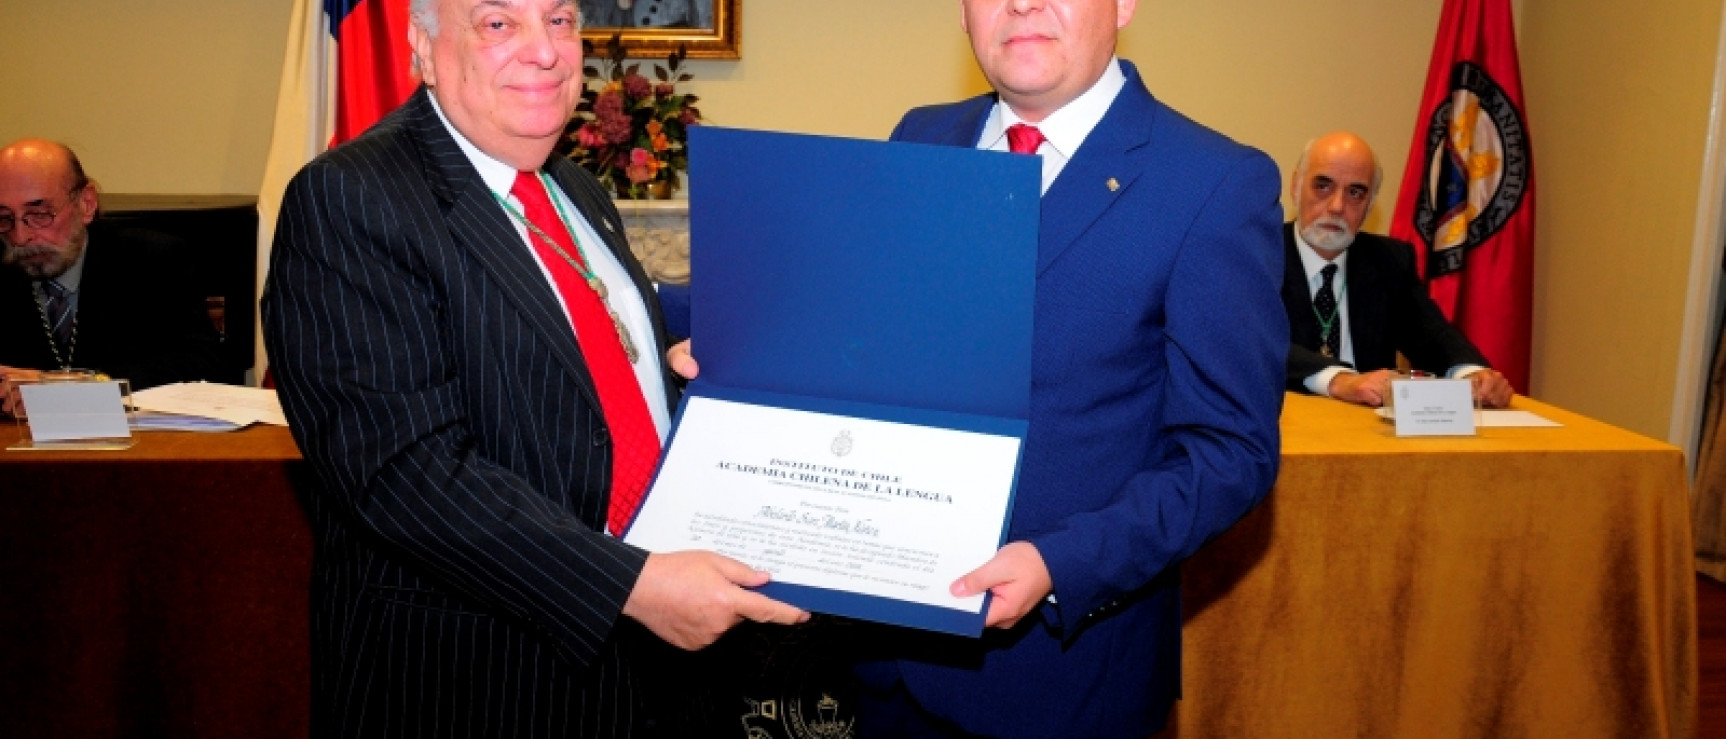 El director de la Academia entrega el diploma a Abelardo San Martín.